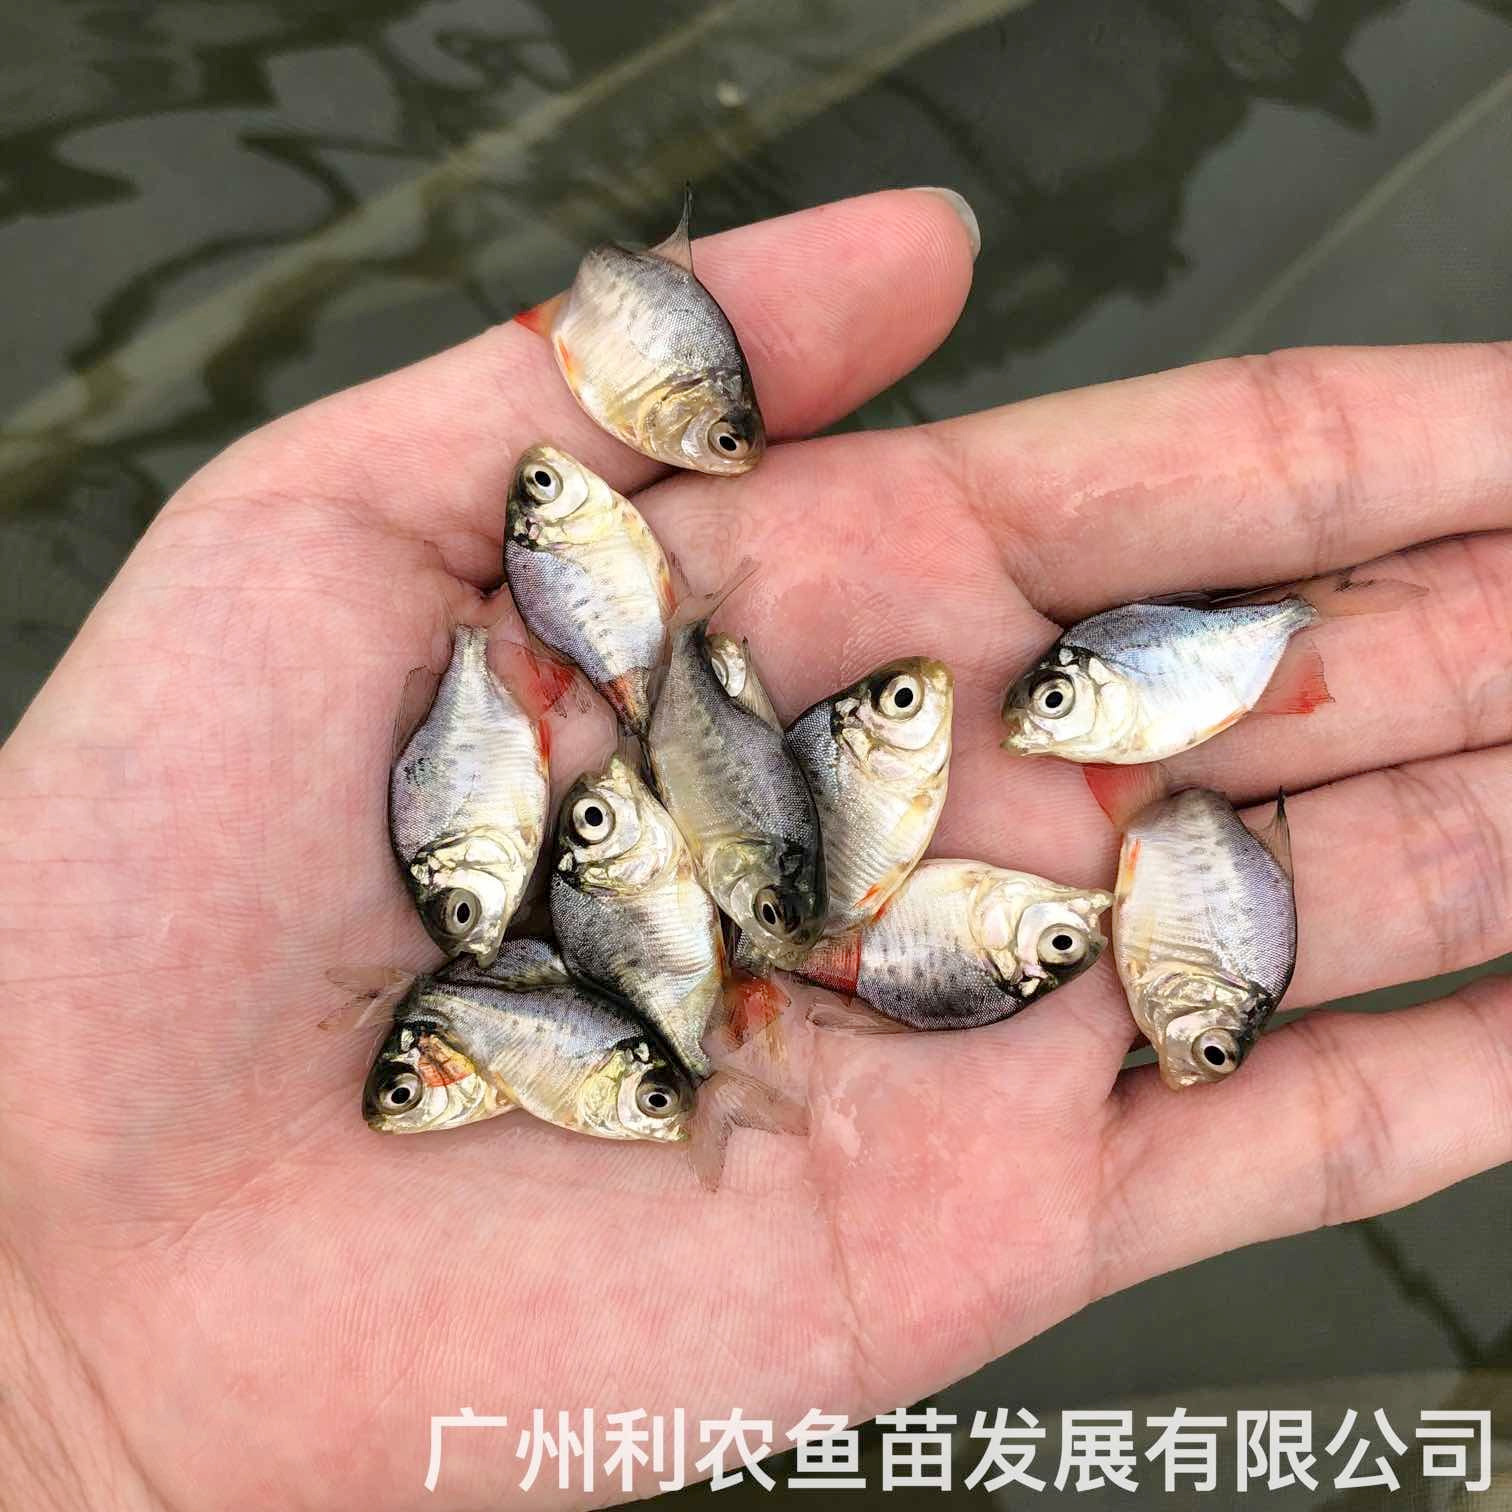 广东茂名红鲳鱼苗出售广东韶关淡水白鲳鱼苗养殖基地